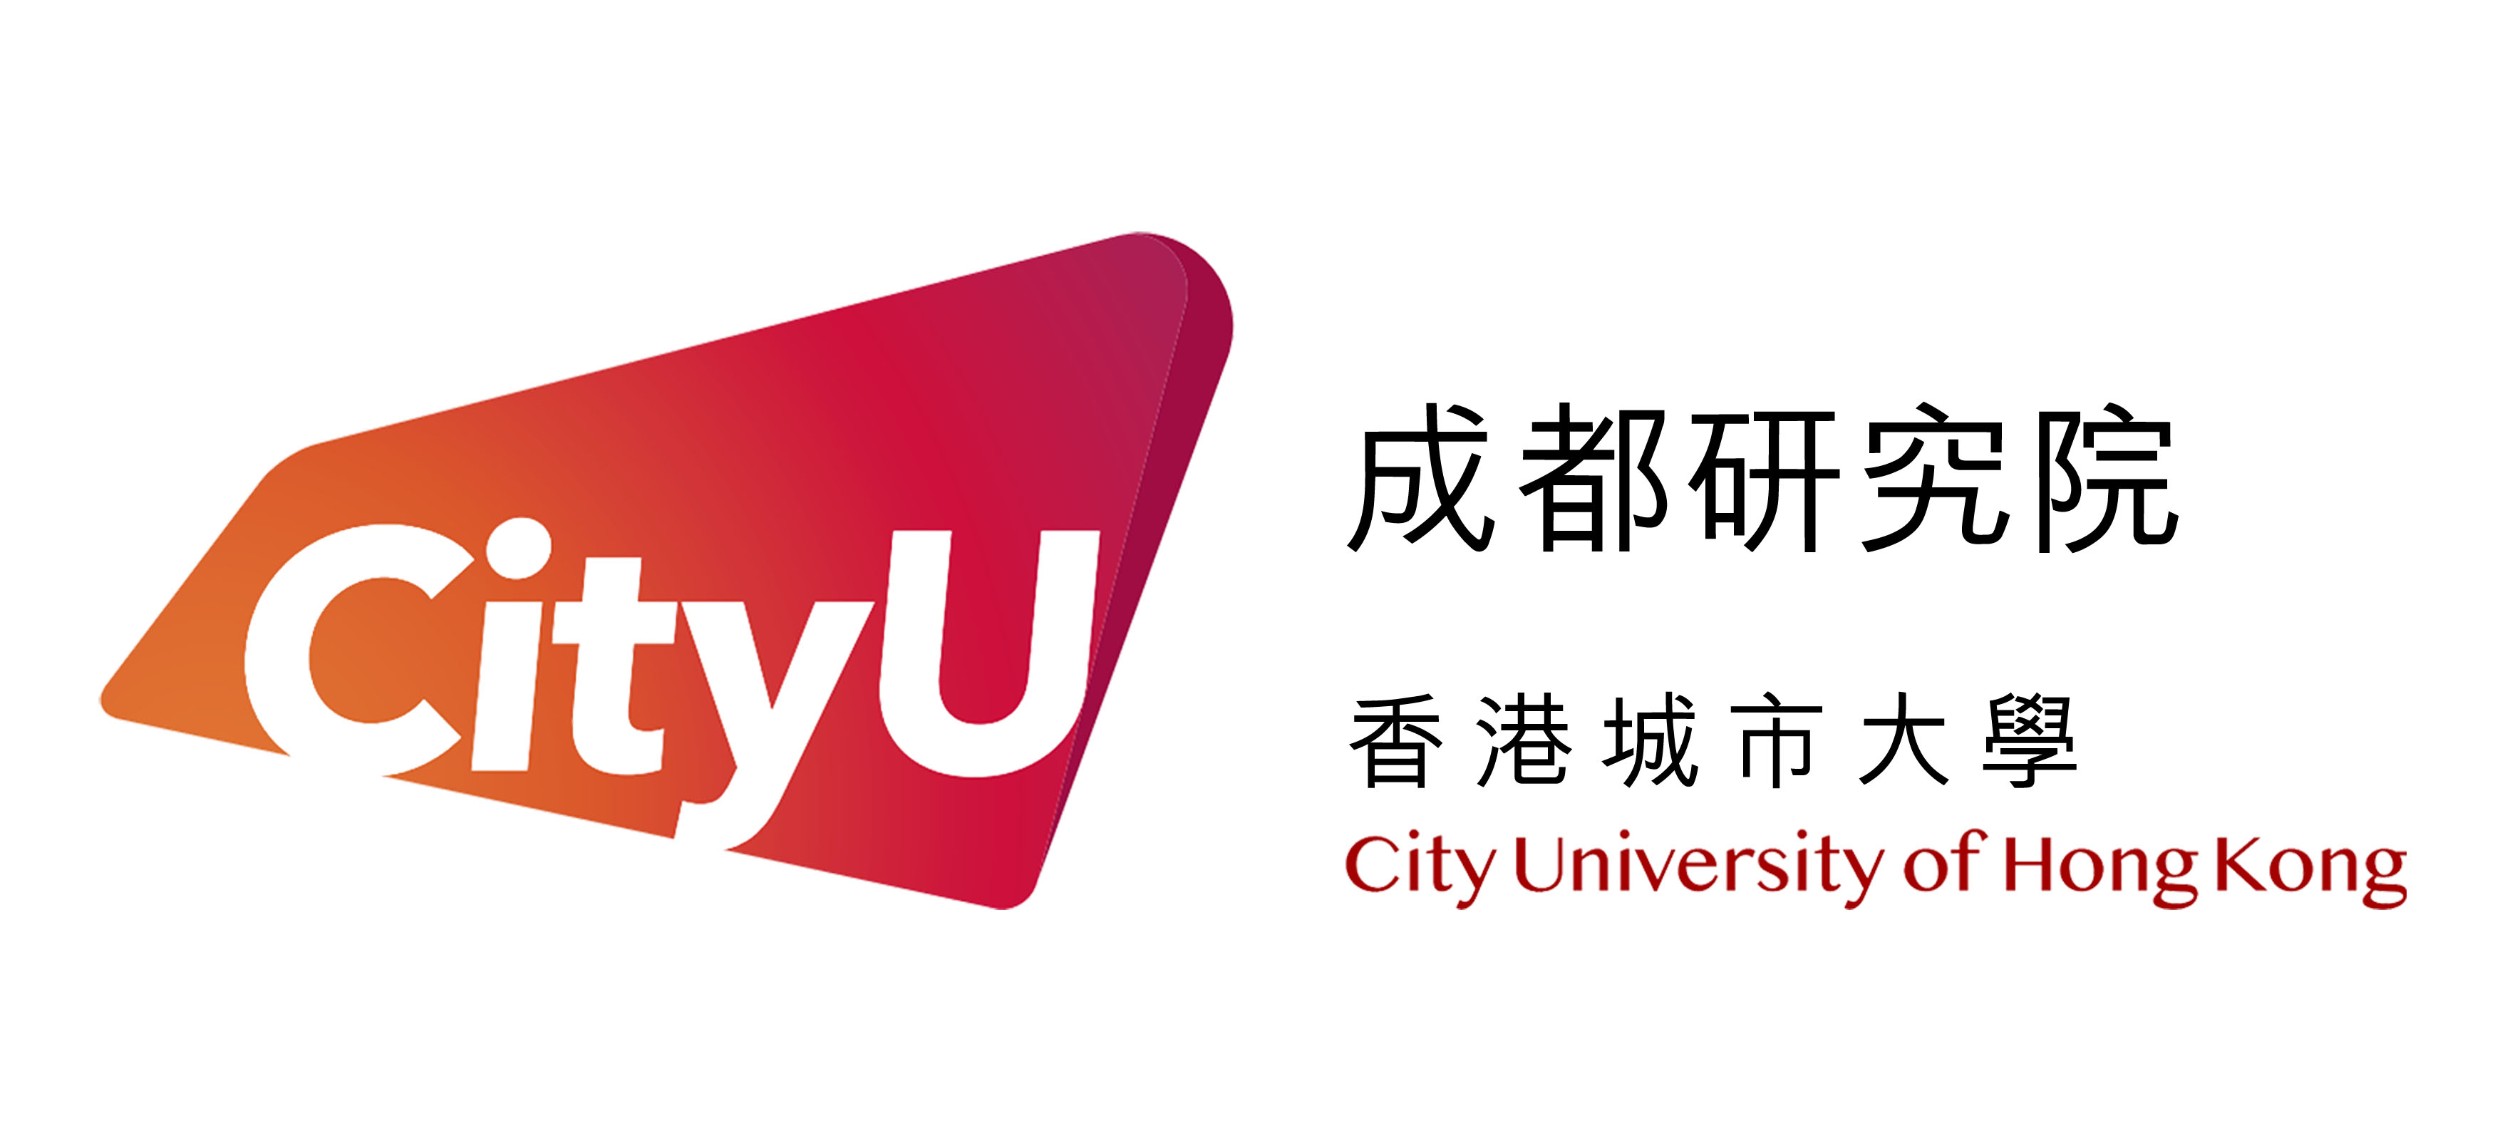 香港城市大学成都研究院